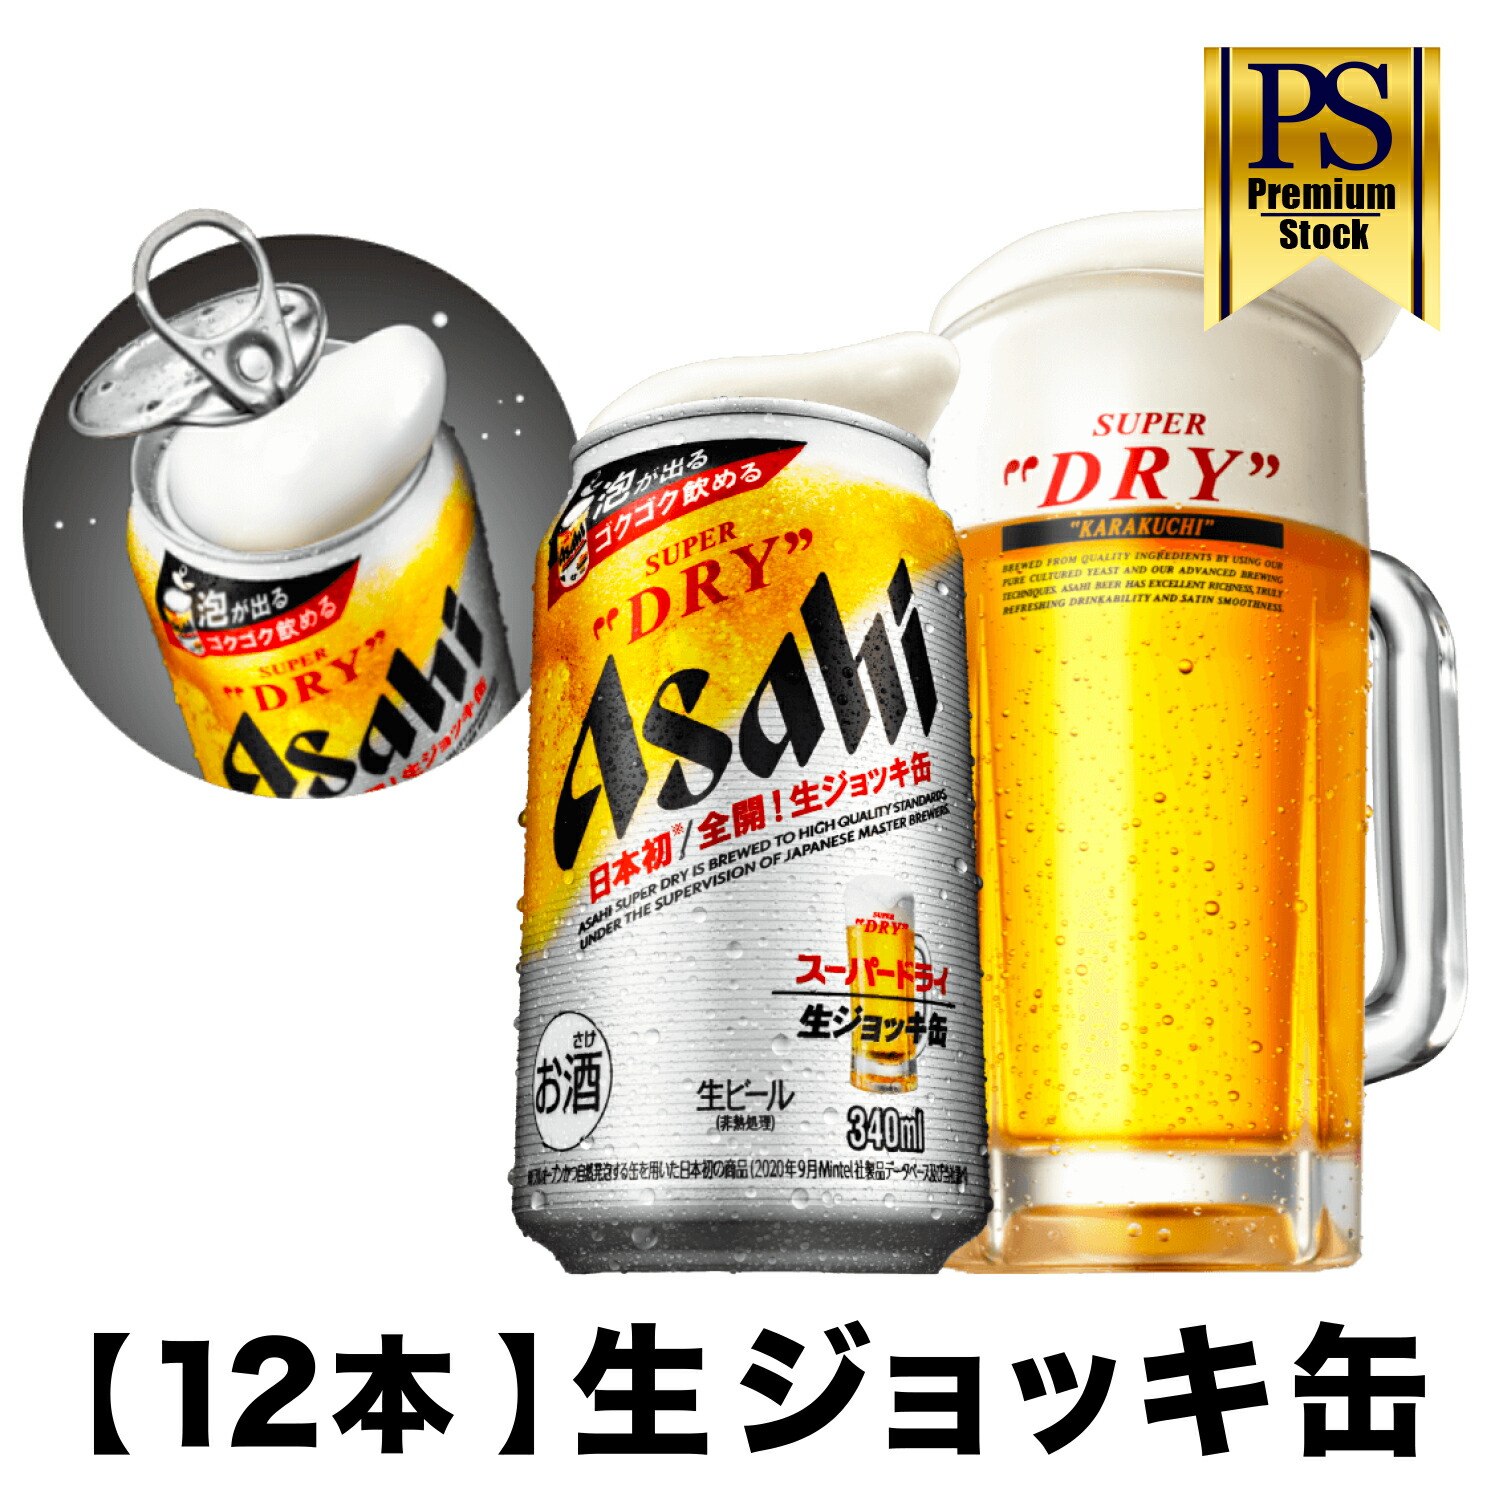 アサヒ - アサヒスーパードライ 生ジョッキ缶 2ケース(340ml×48缶)の+